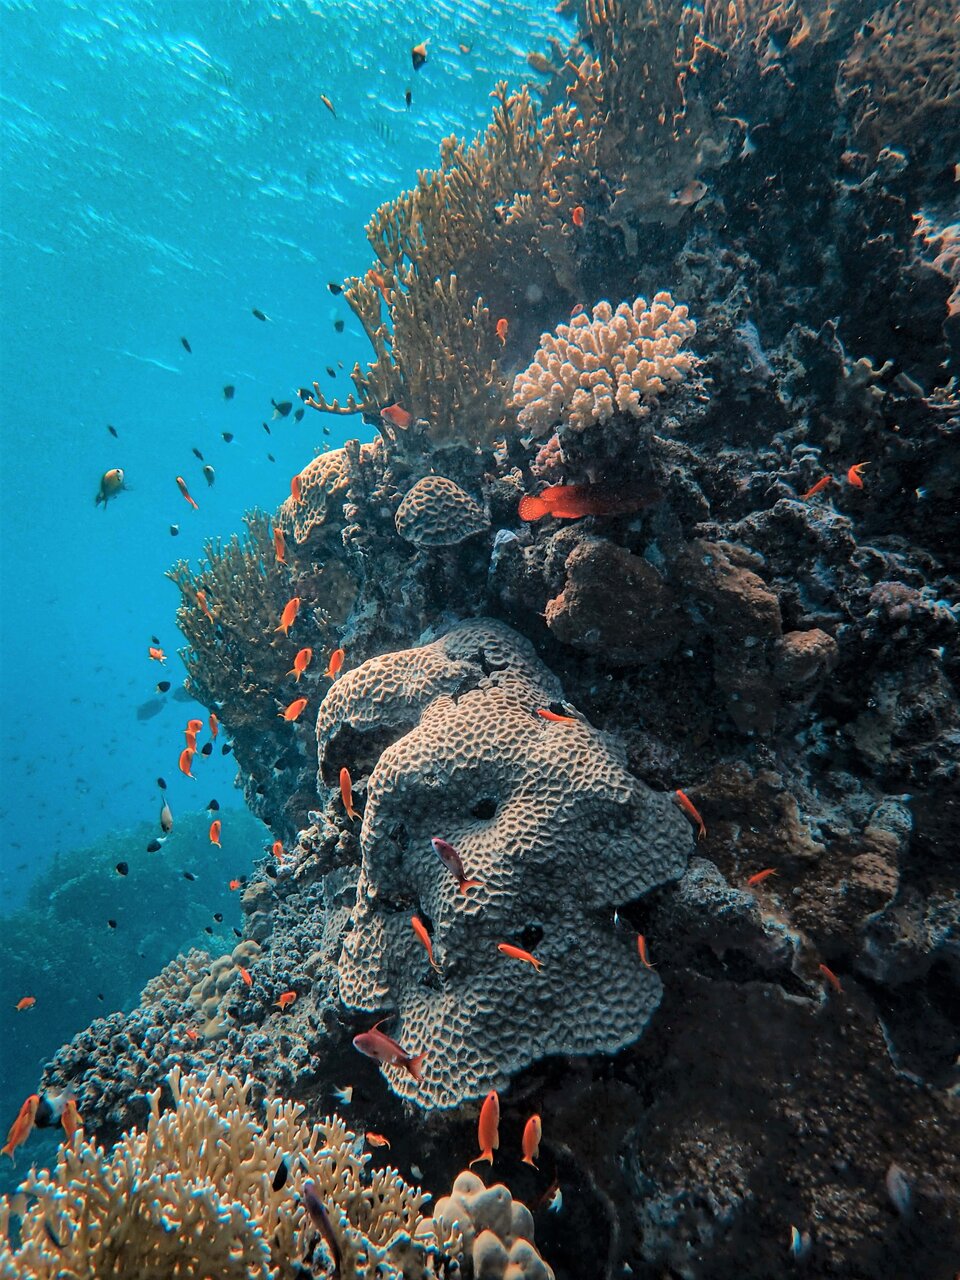 Ocean acidification weakens coral reef skeletons